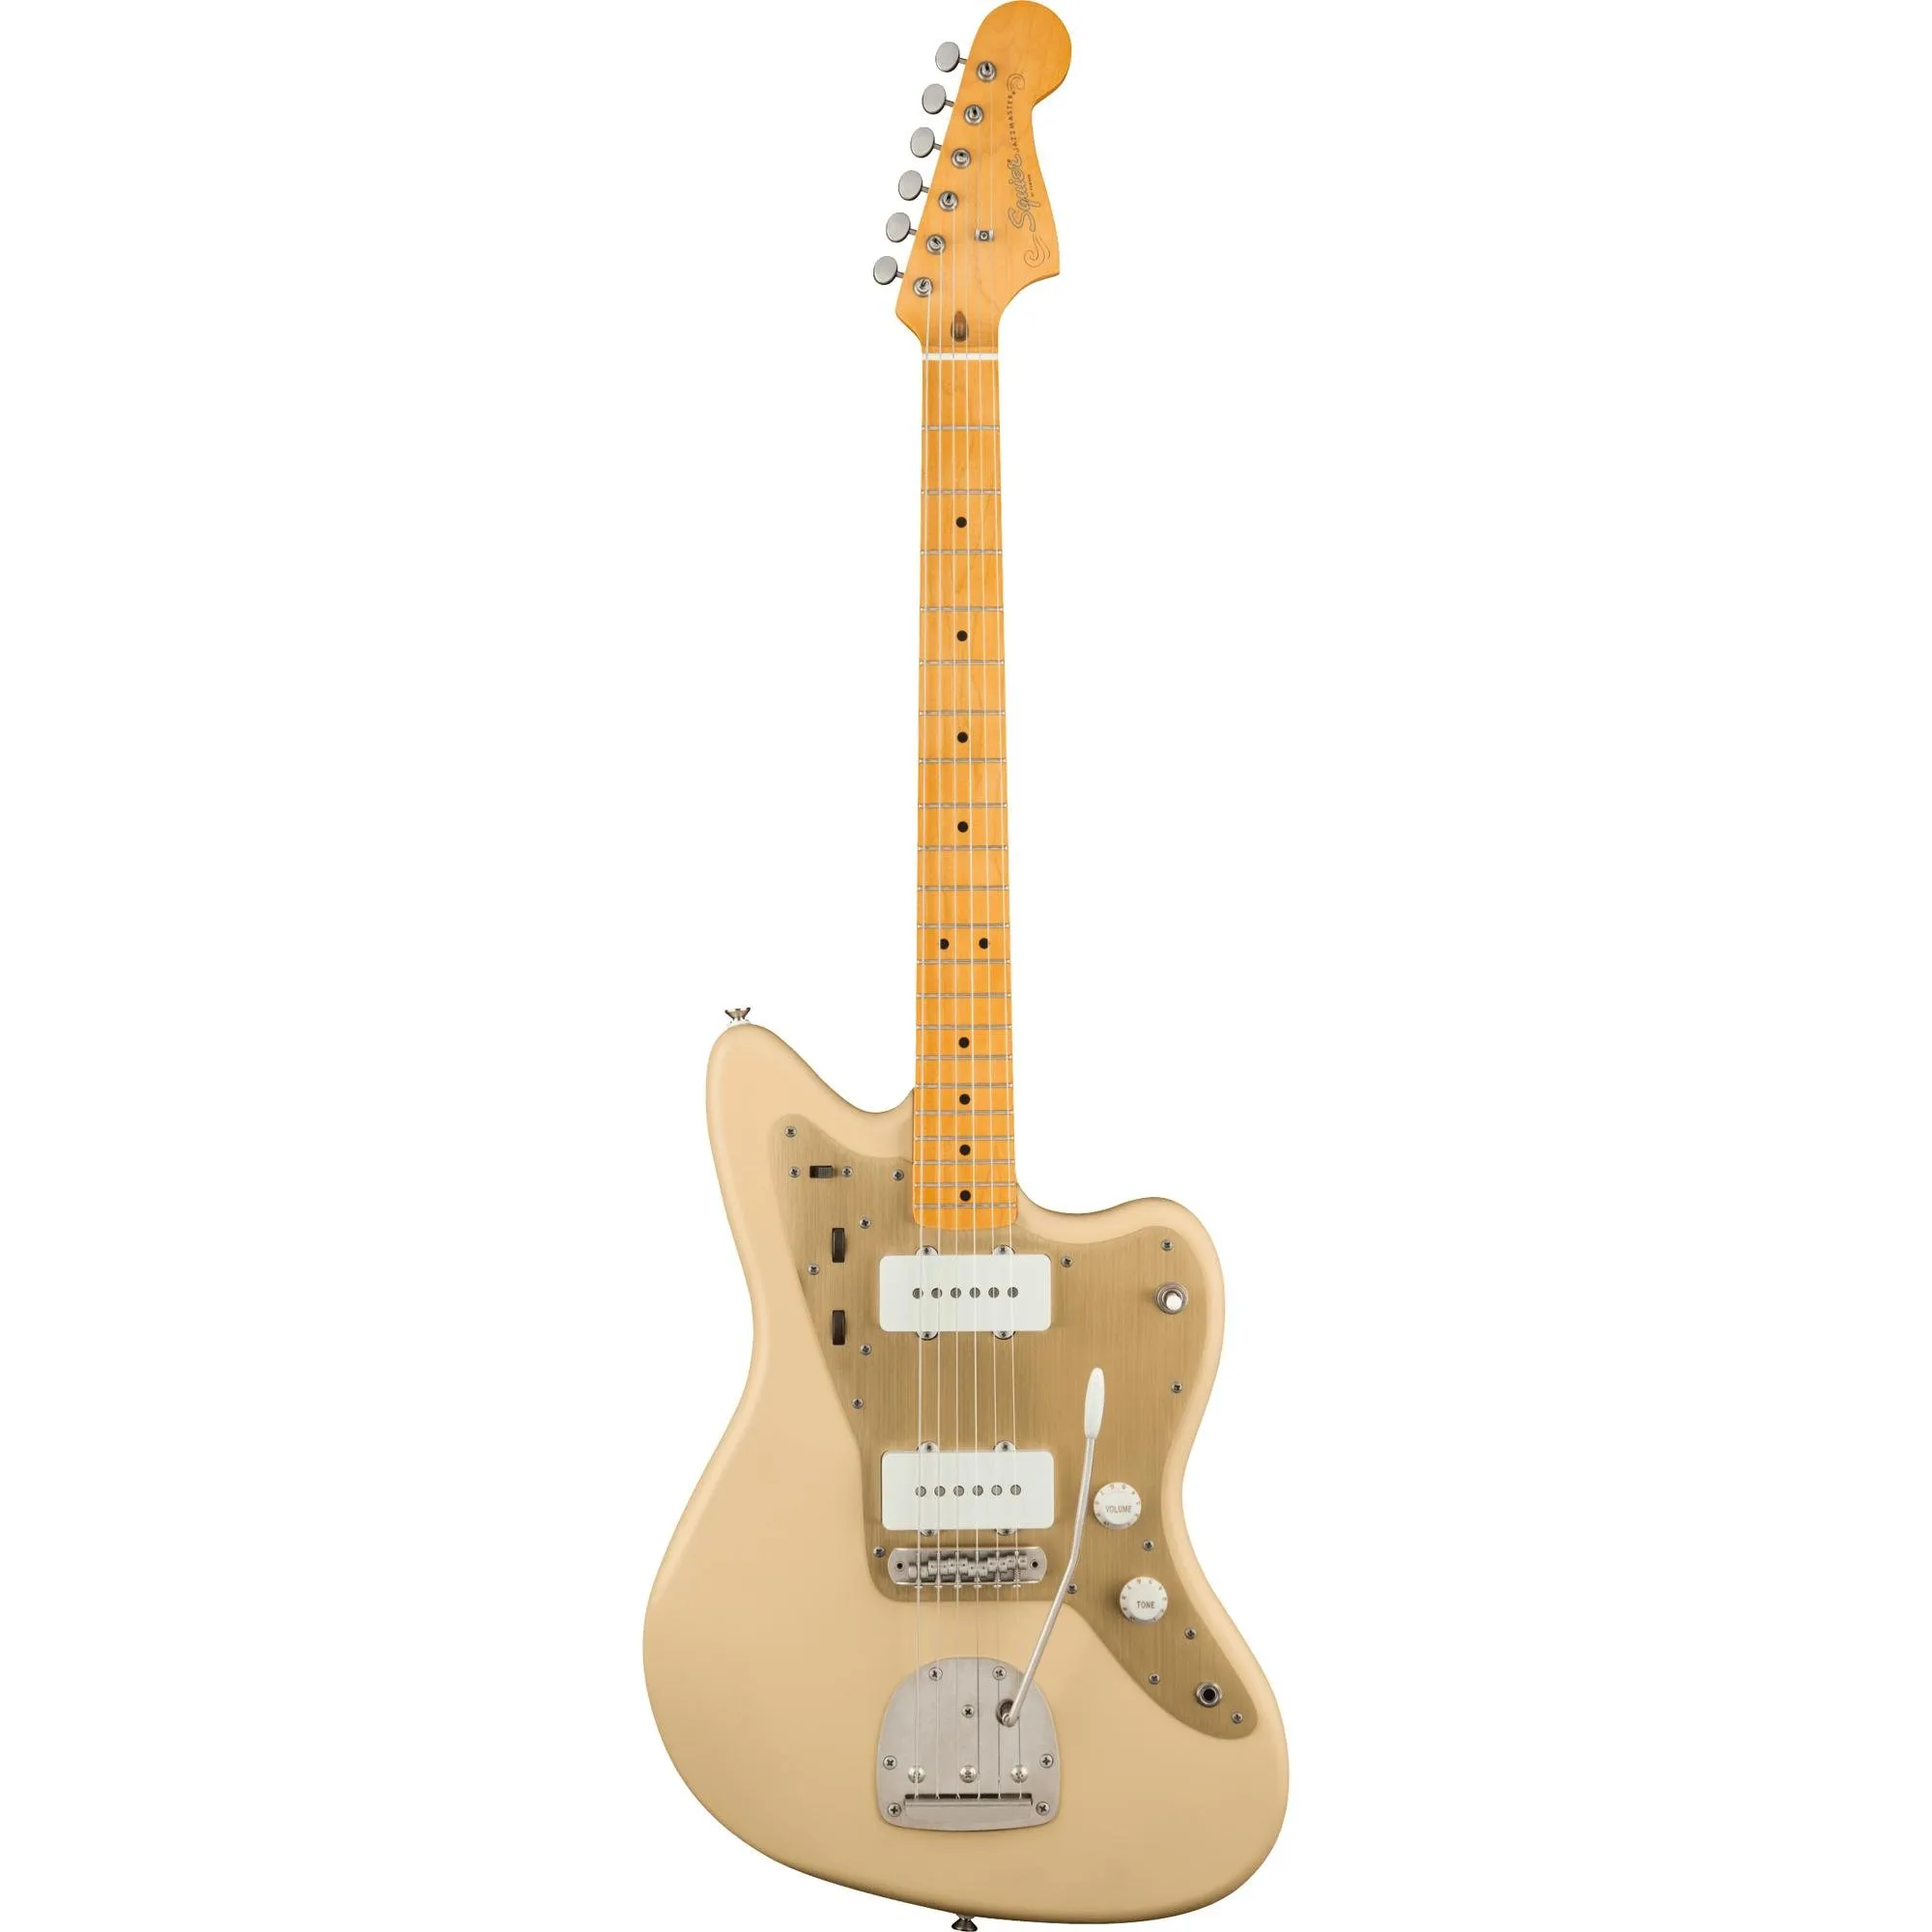 Guitarra Squier Jazzmaster Vintage Satin Desert Sand por 4.499,99 à vista no boleto/pix ou parcele em até 12x sem juros. Compre na loja Mundomax!